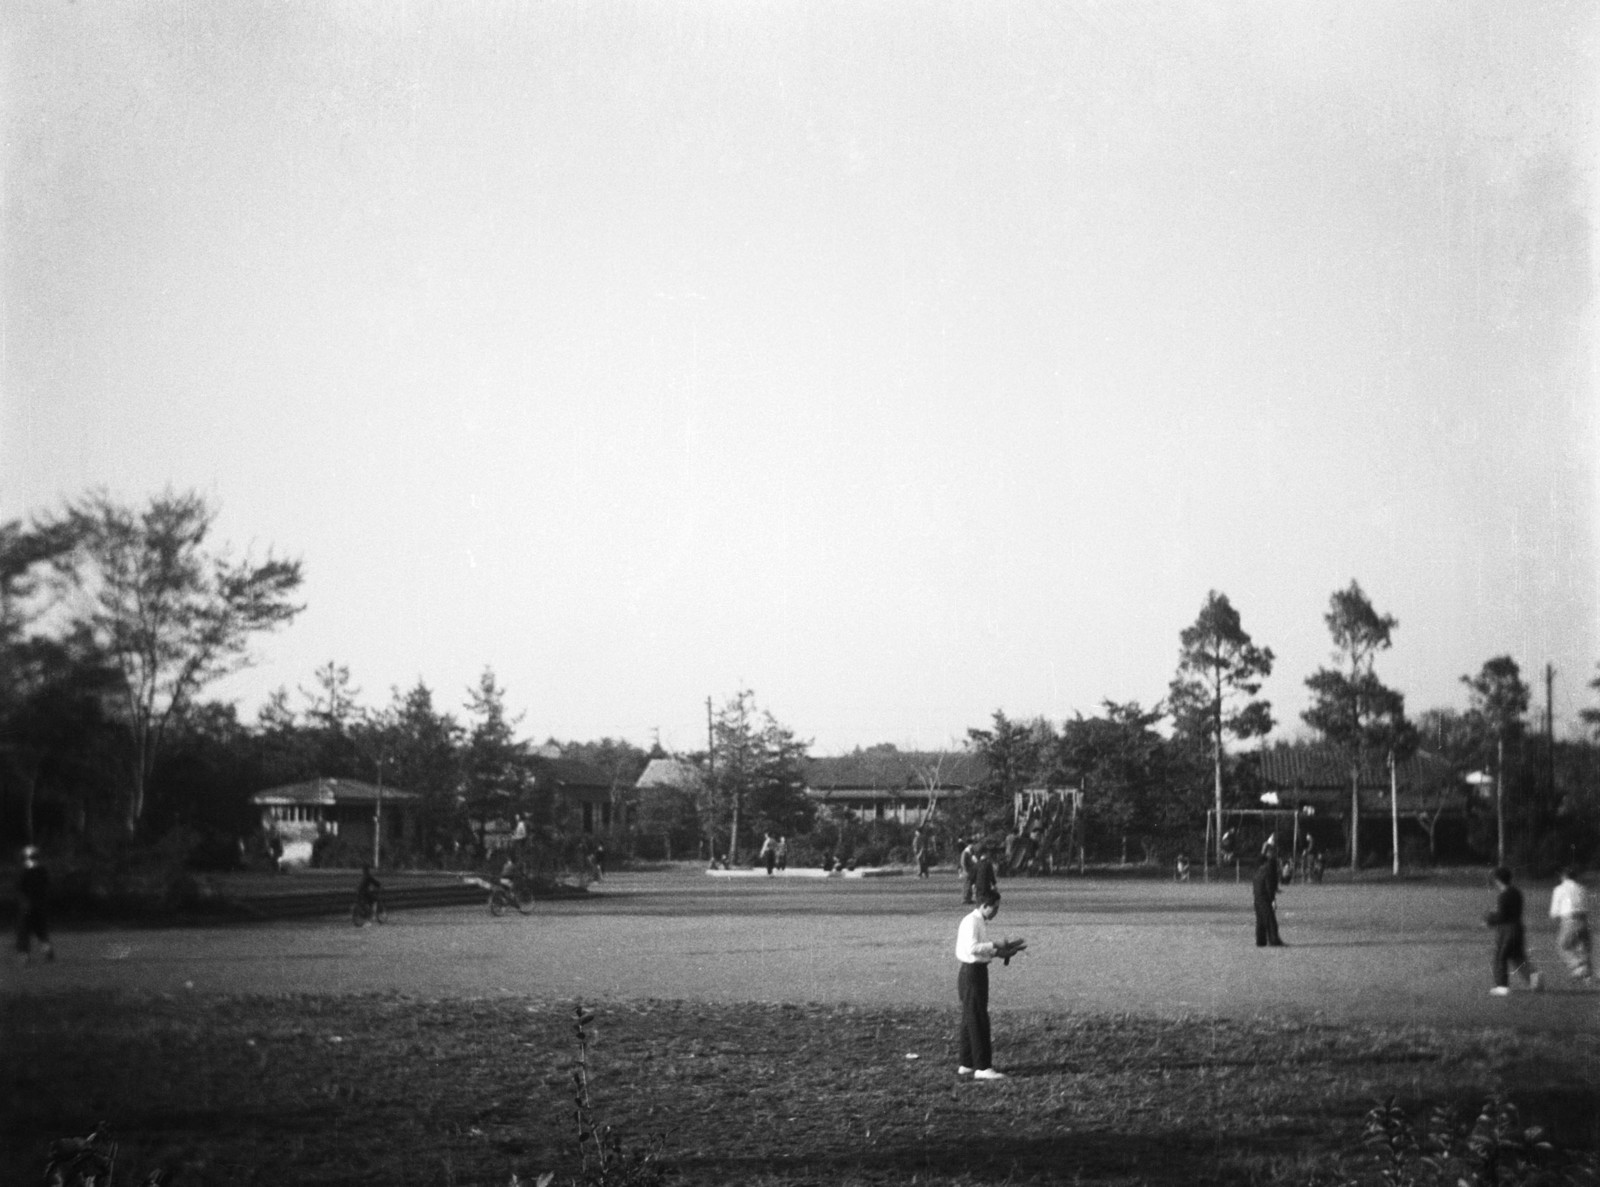 赤松公園